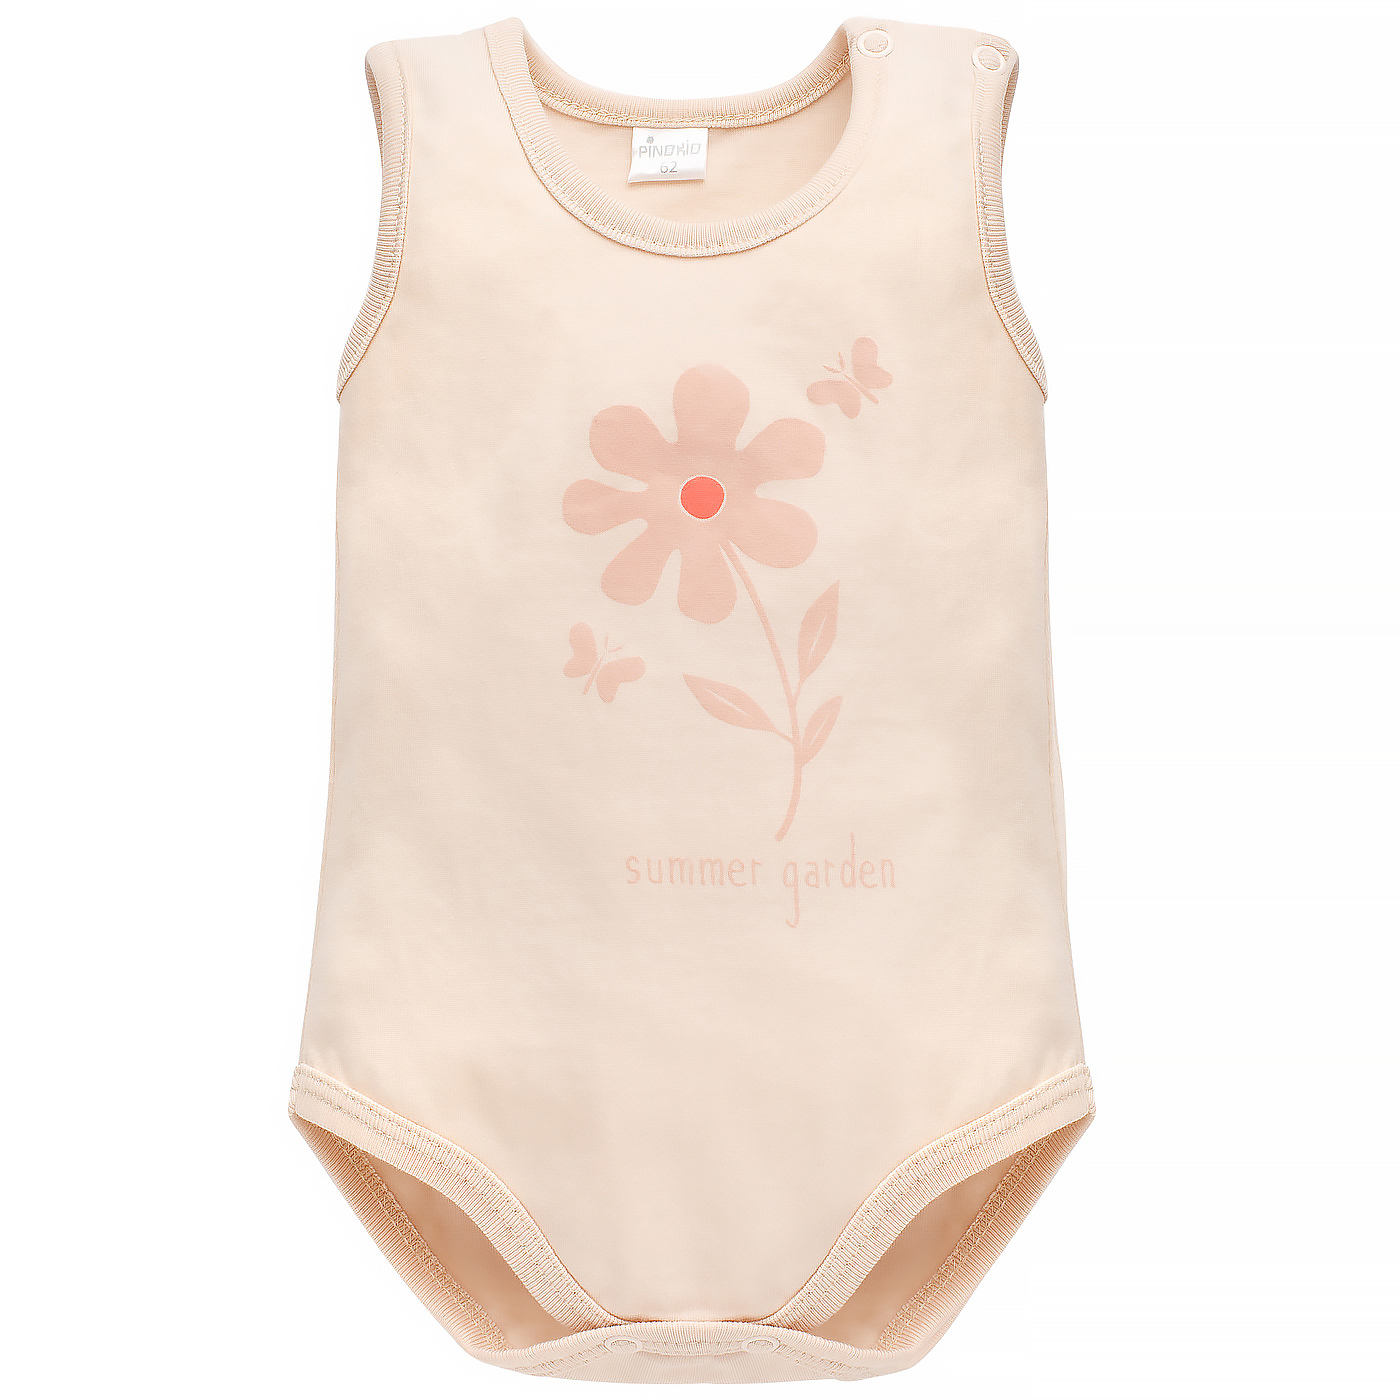 Levně Pinokio Kids's Summer Garden Bodysuit Sleeveless /Flower